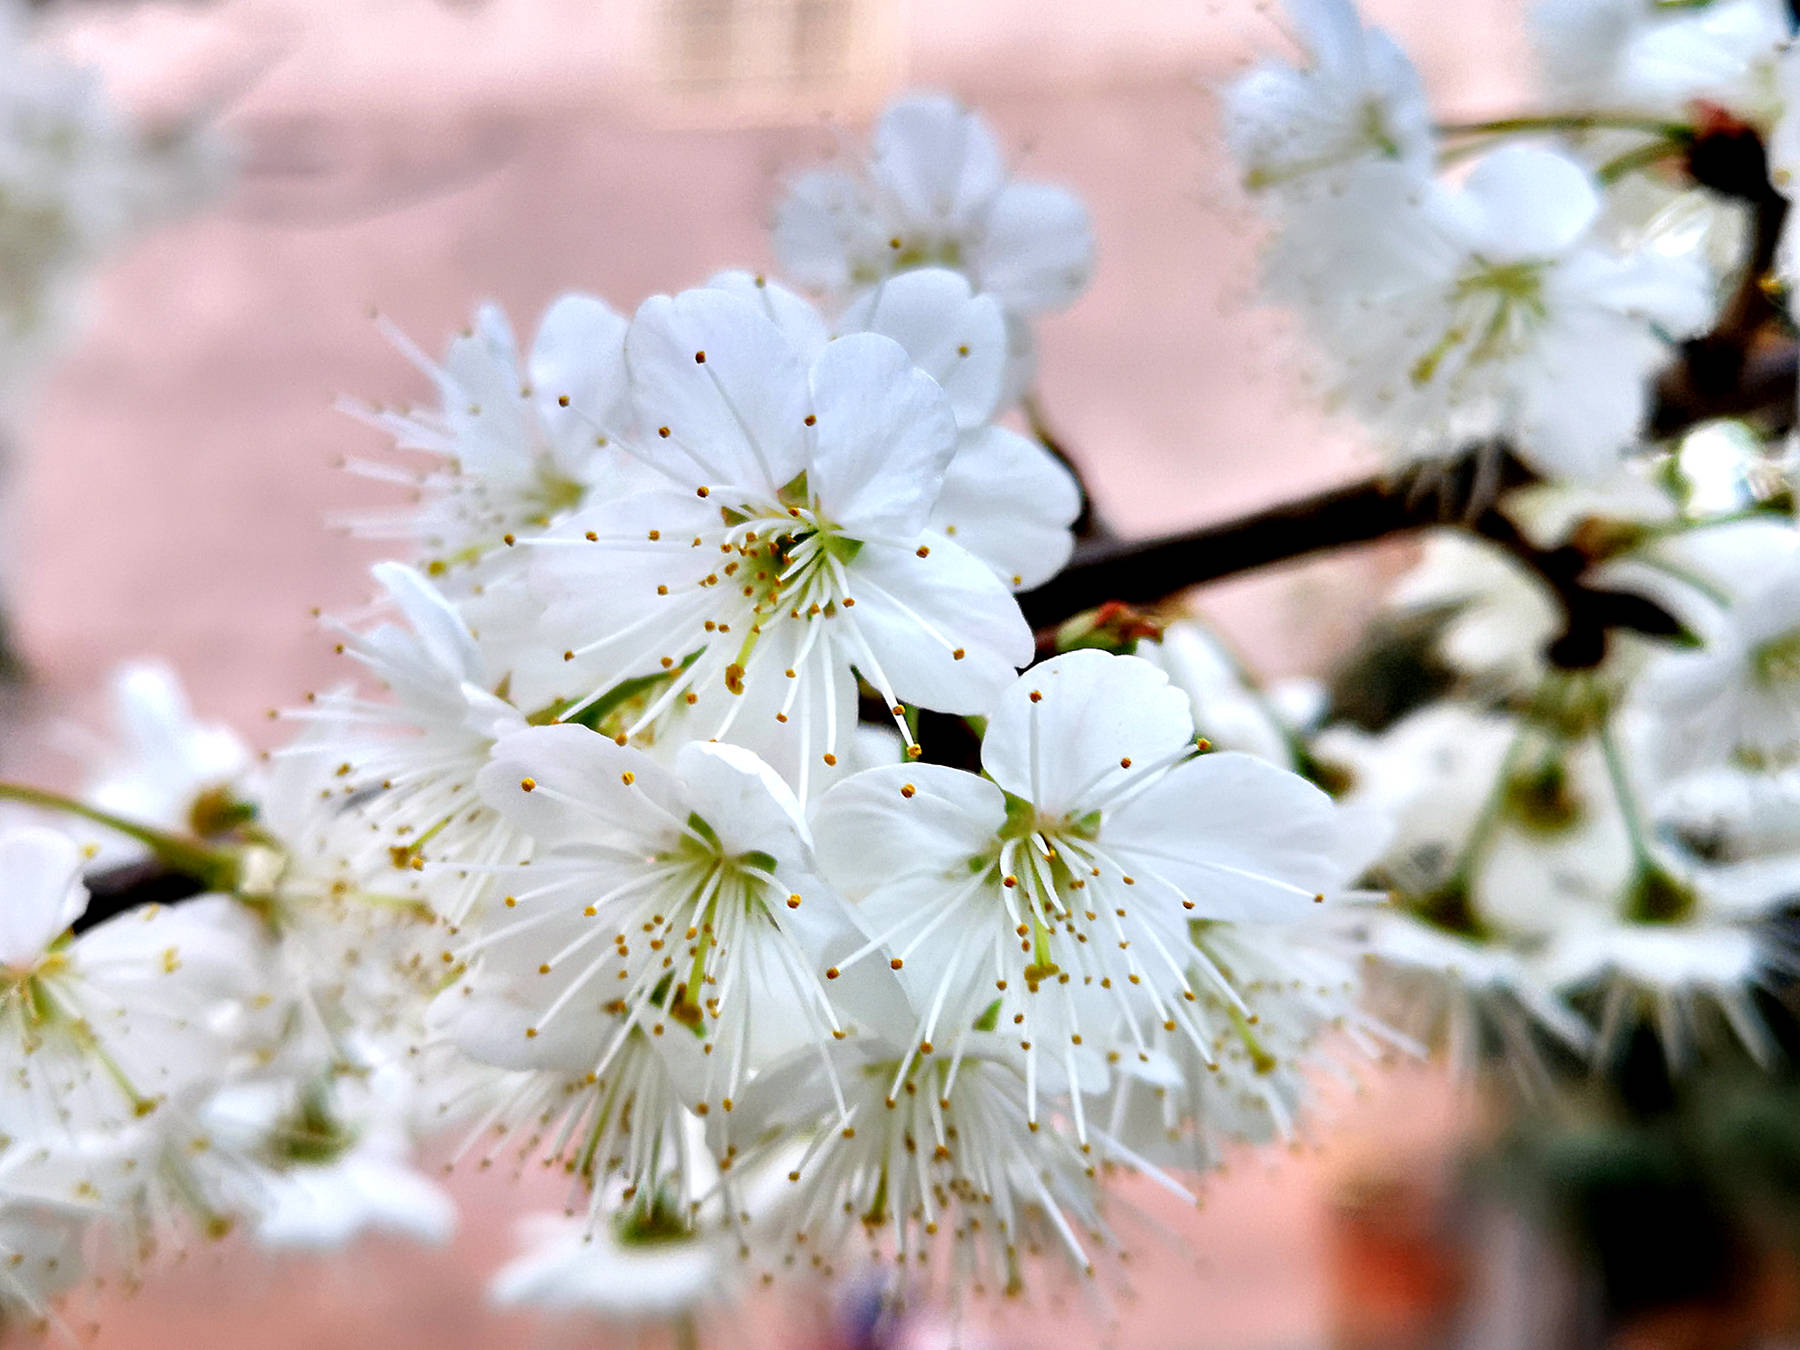 广元农村的樱桃花开啦,洁白的花朵如雪!